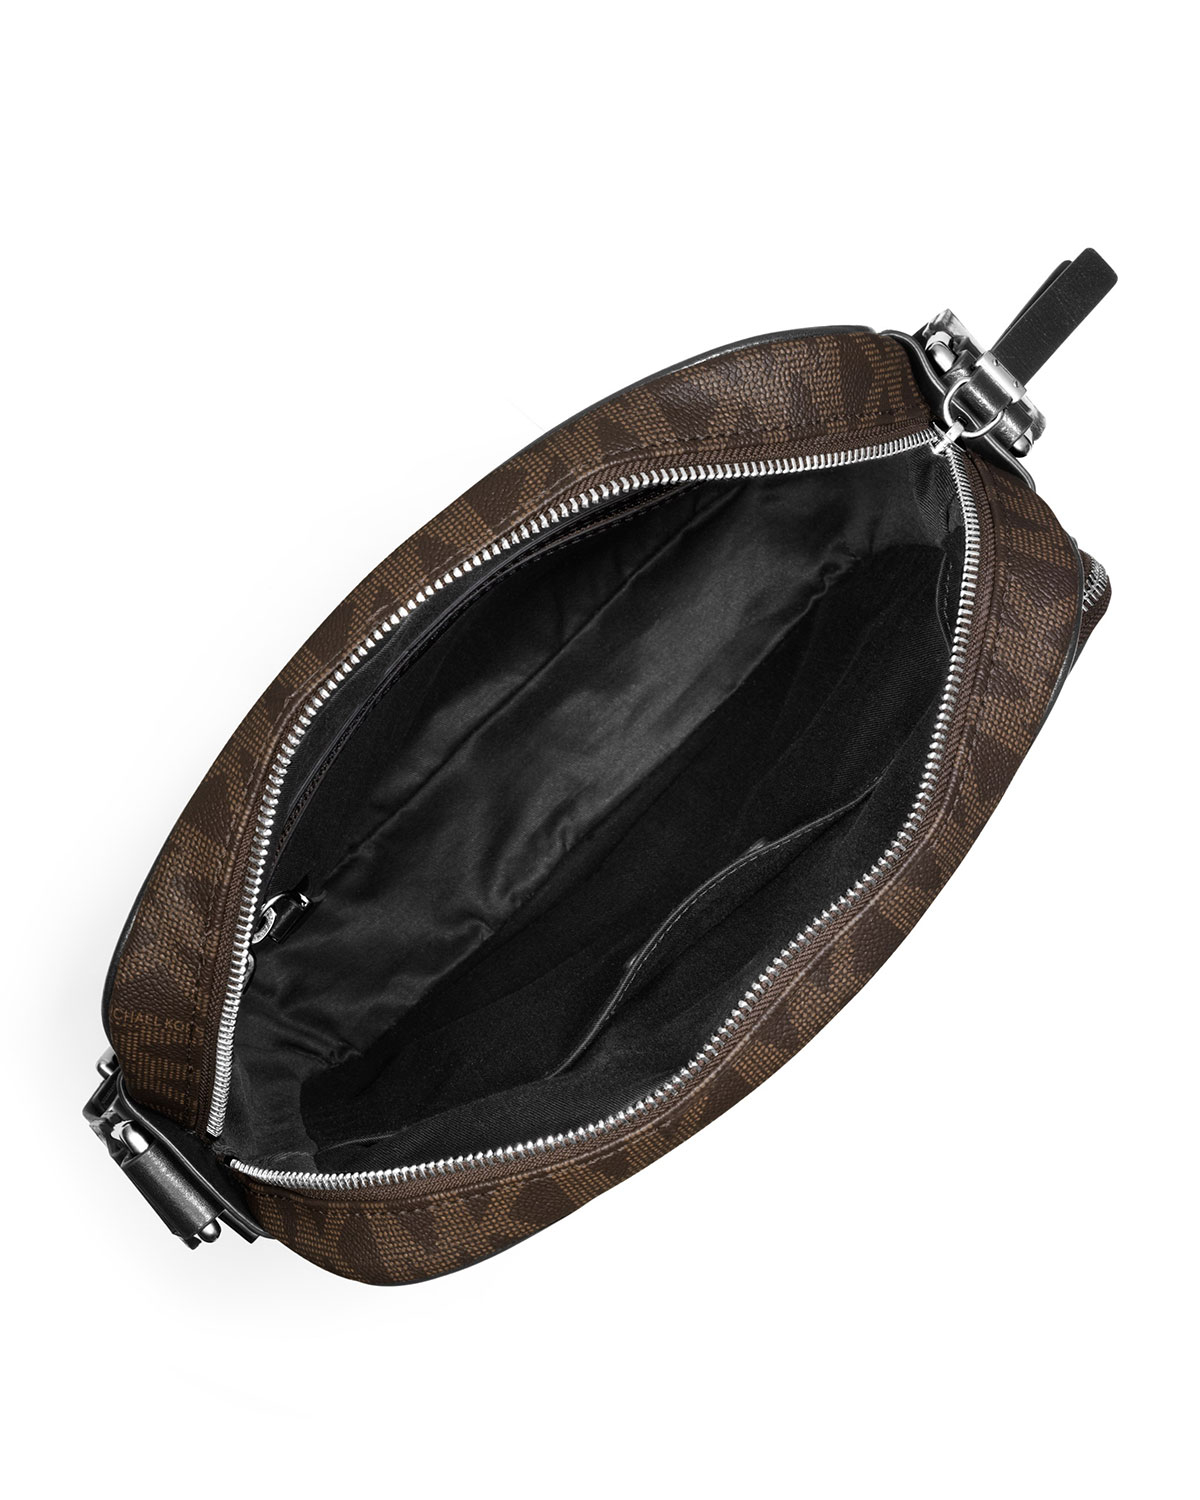 Michael Kors Black & Pearl Gray Floral Selma Medium Crossbody Bag, Best  Price and Reviews